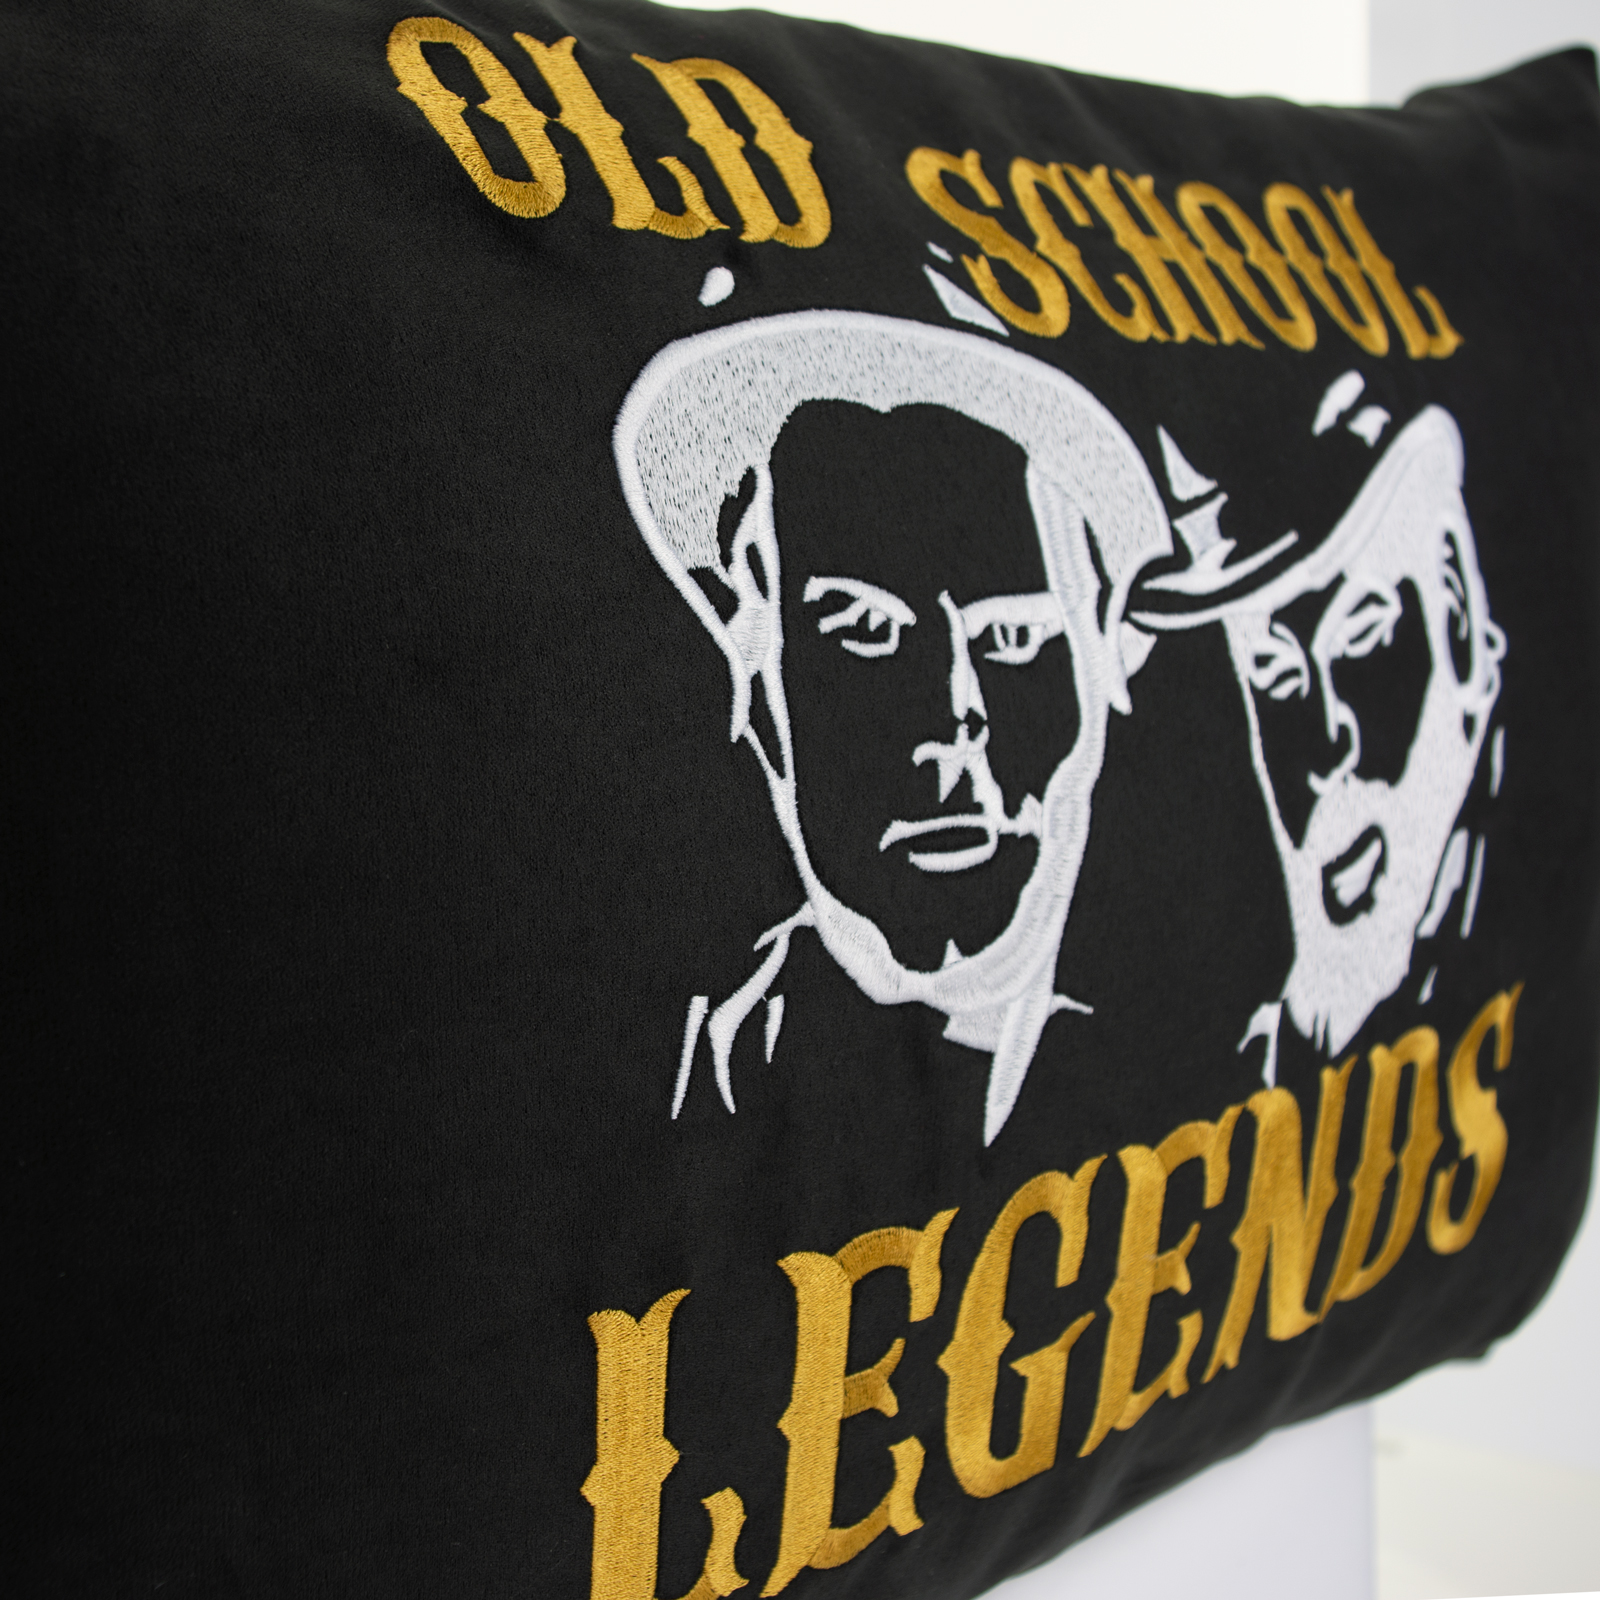 Old School Legends - Kissen